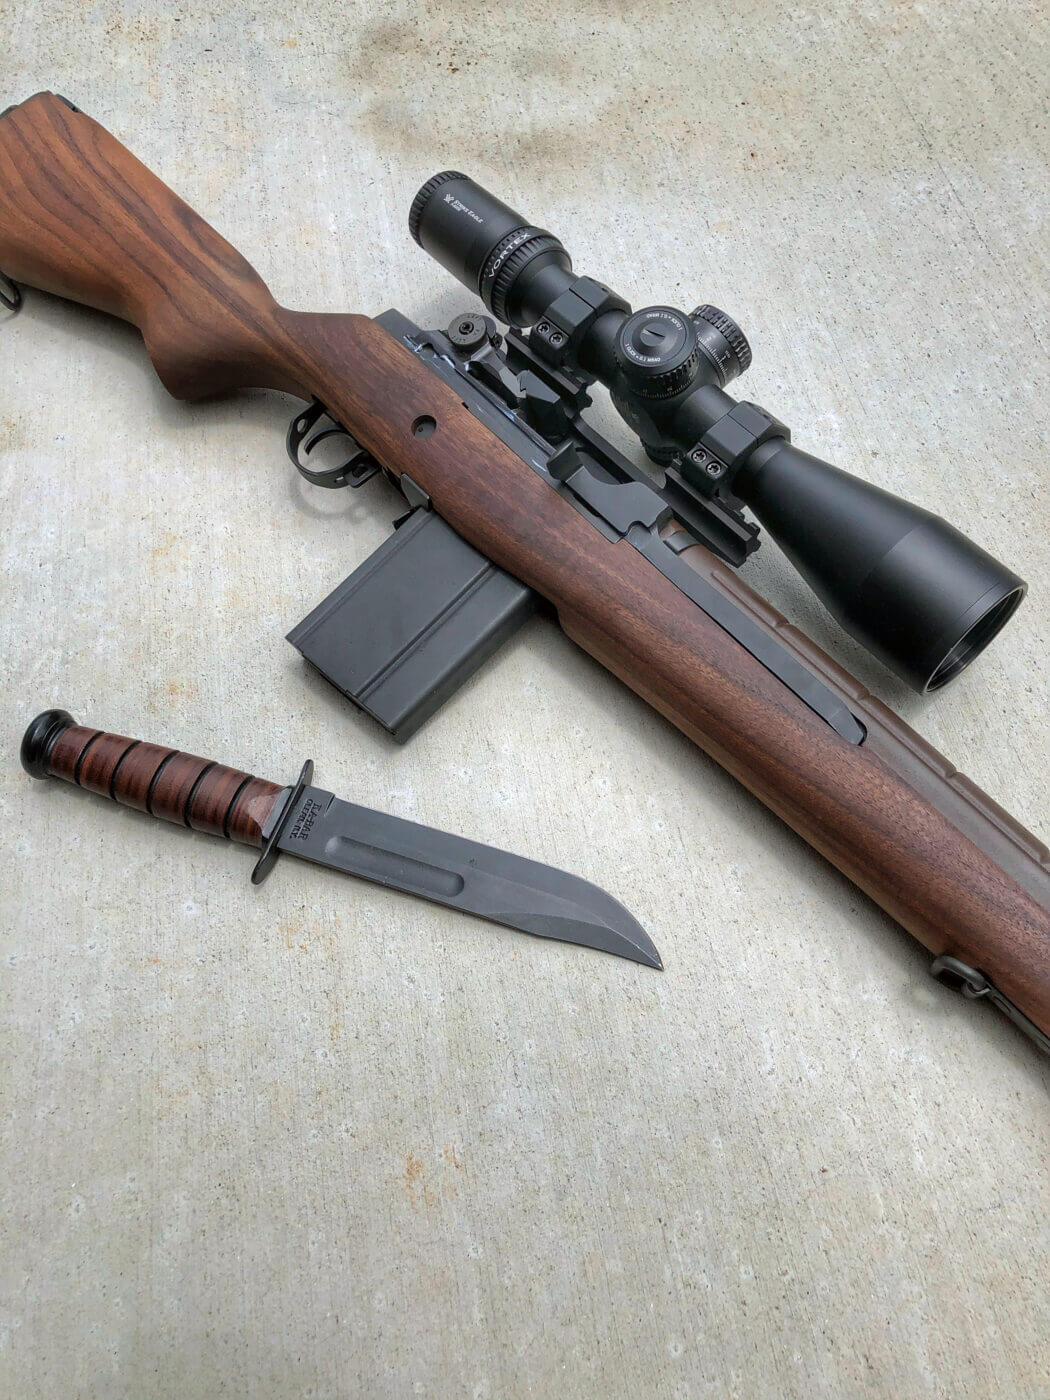 m1a bayonet lug